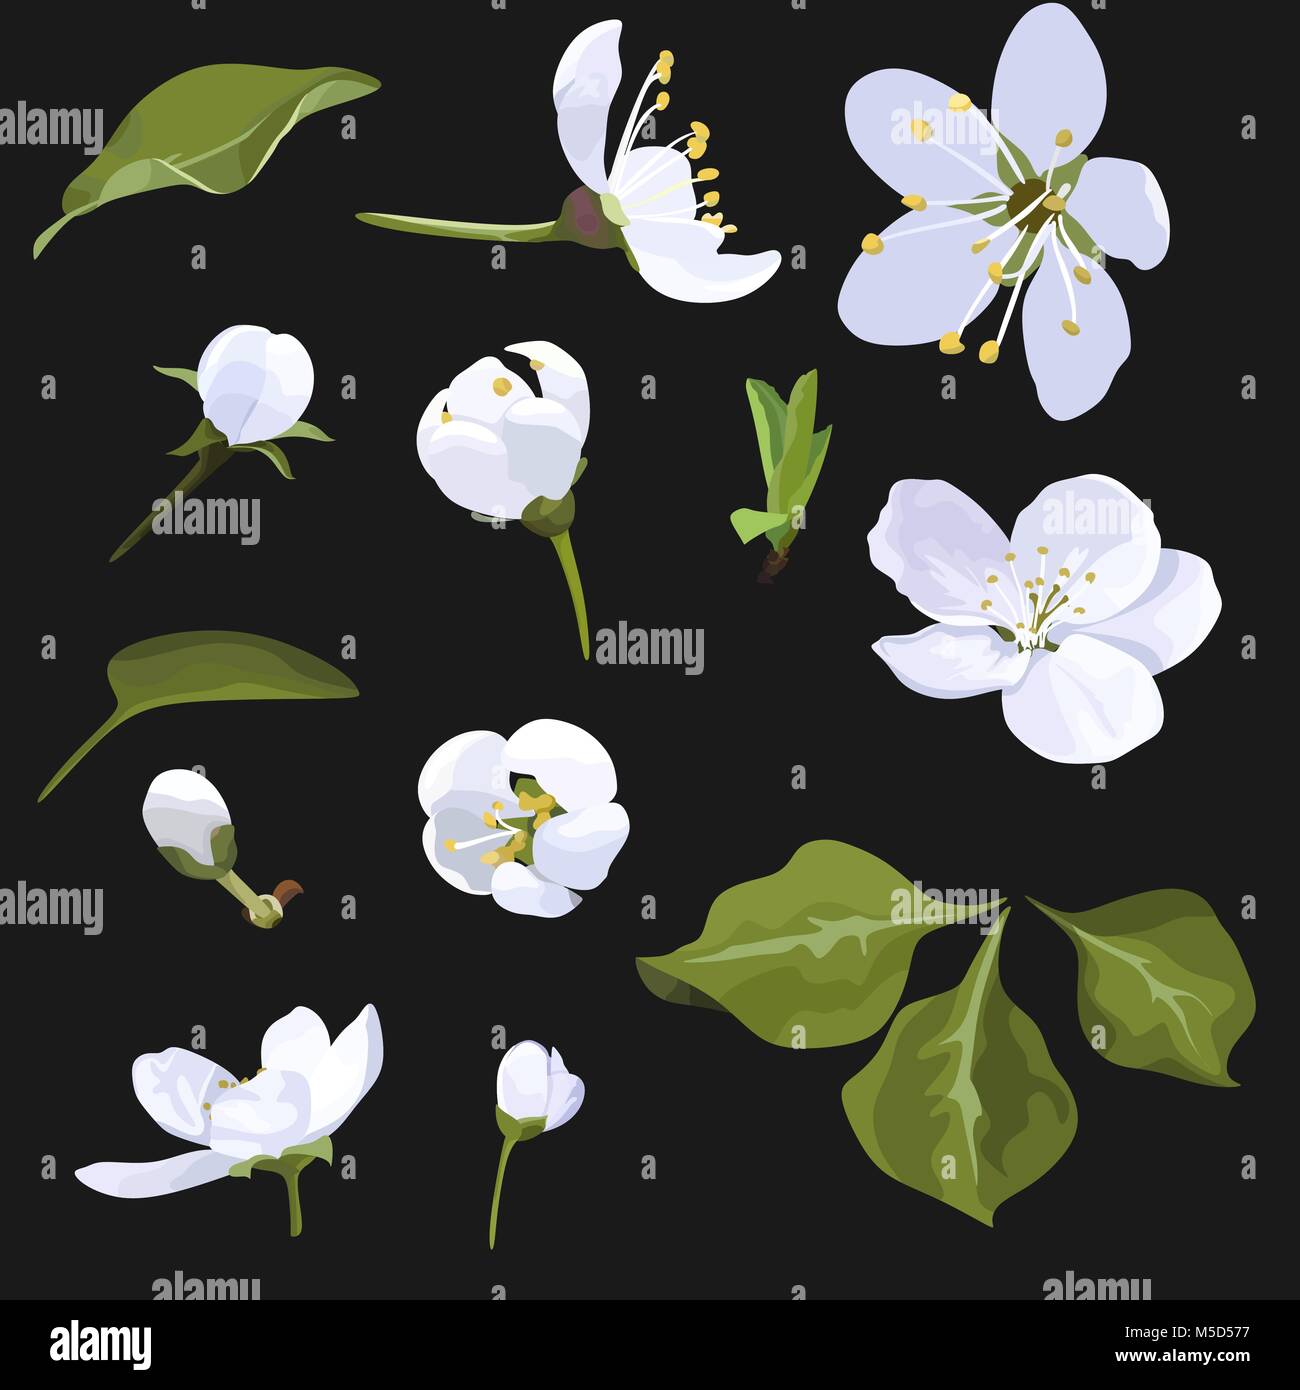 Apple Blossom Vector Clip Art Satz weiße Blume Bild auf schwarzem Hintergrund Cherry Blossom Stock Vektor